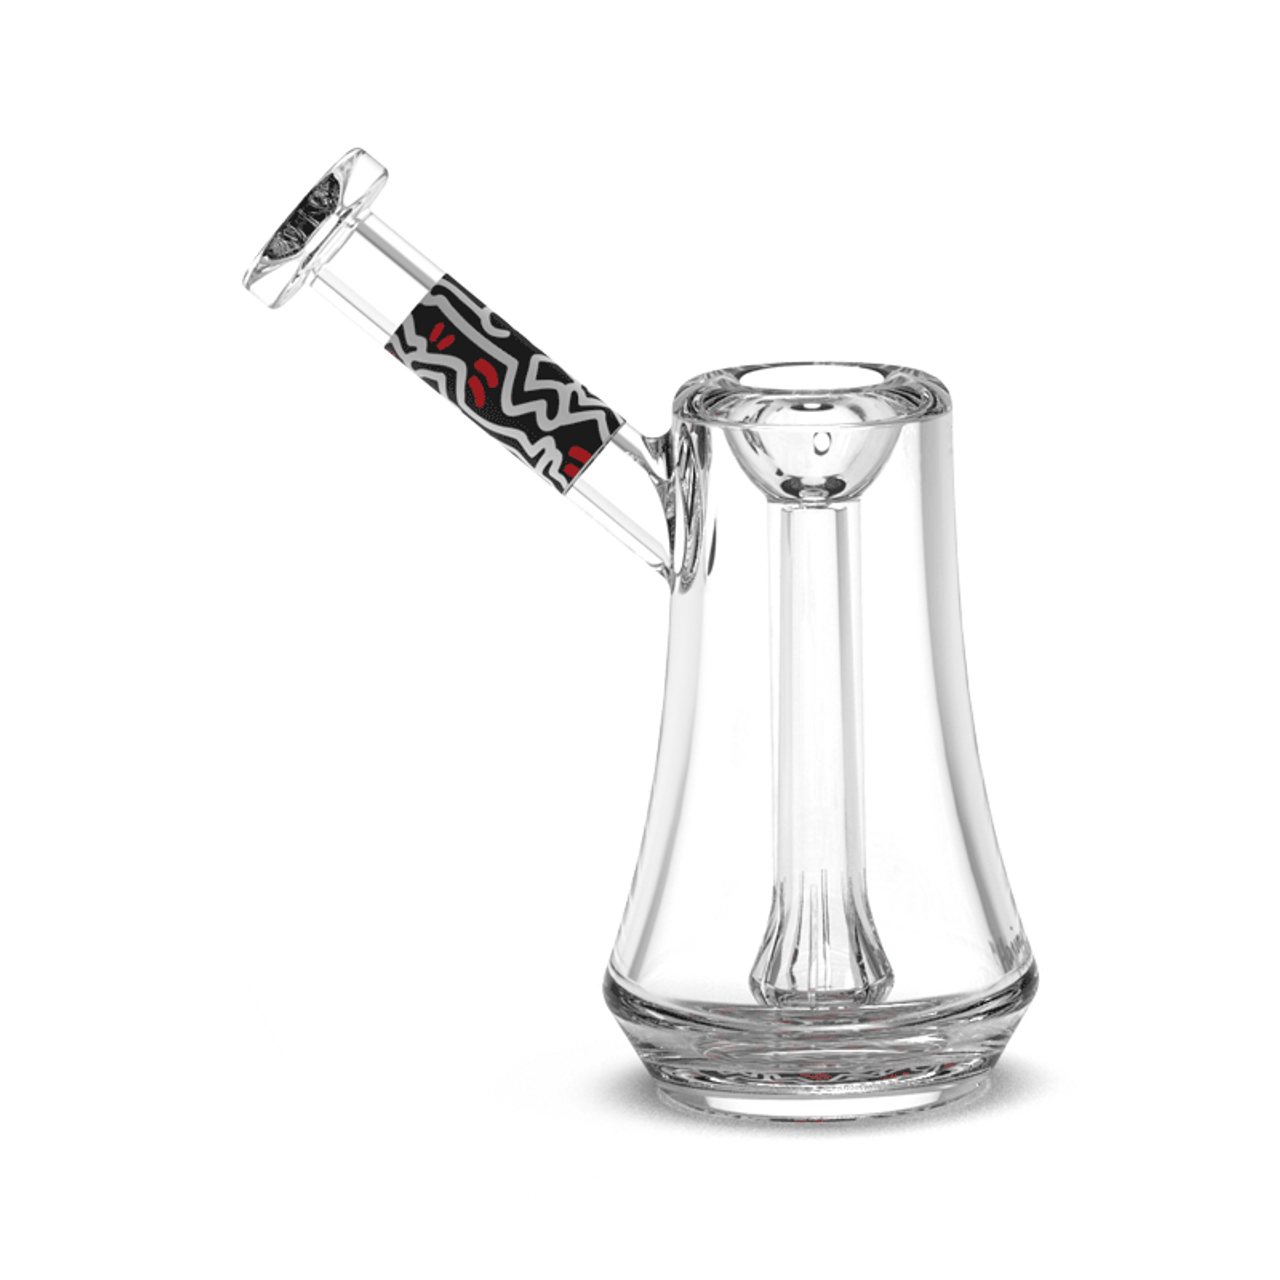 K. Haring Glass Bubbler - Black Red White